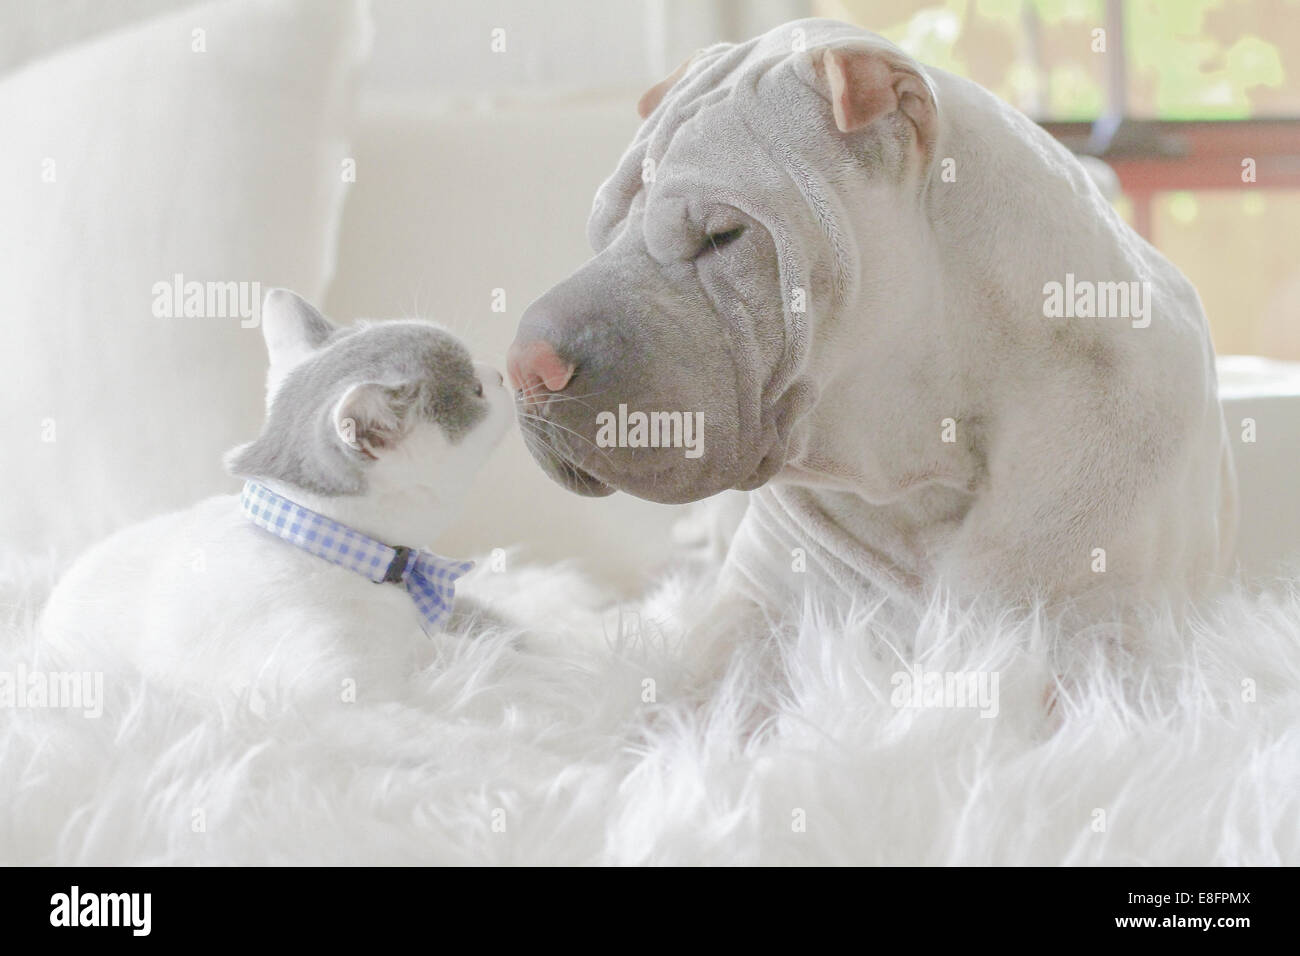 Le chiot Shar-pei et le chaton pylashort britannique allongé sur un tapis touchant le nez Banque D'Images